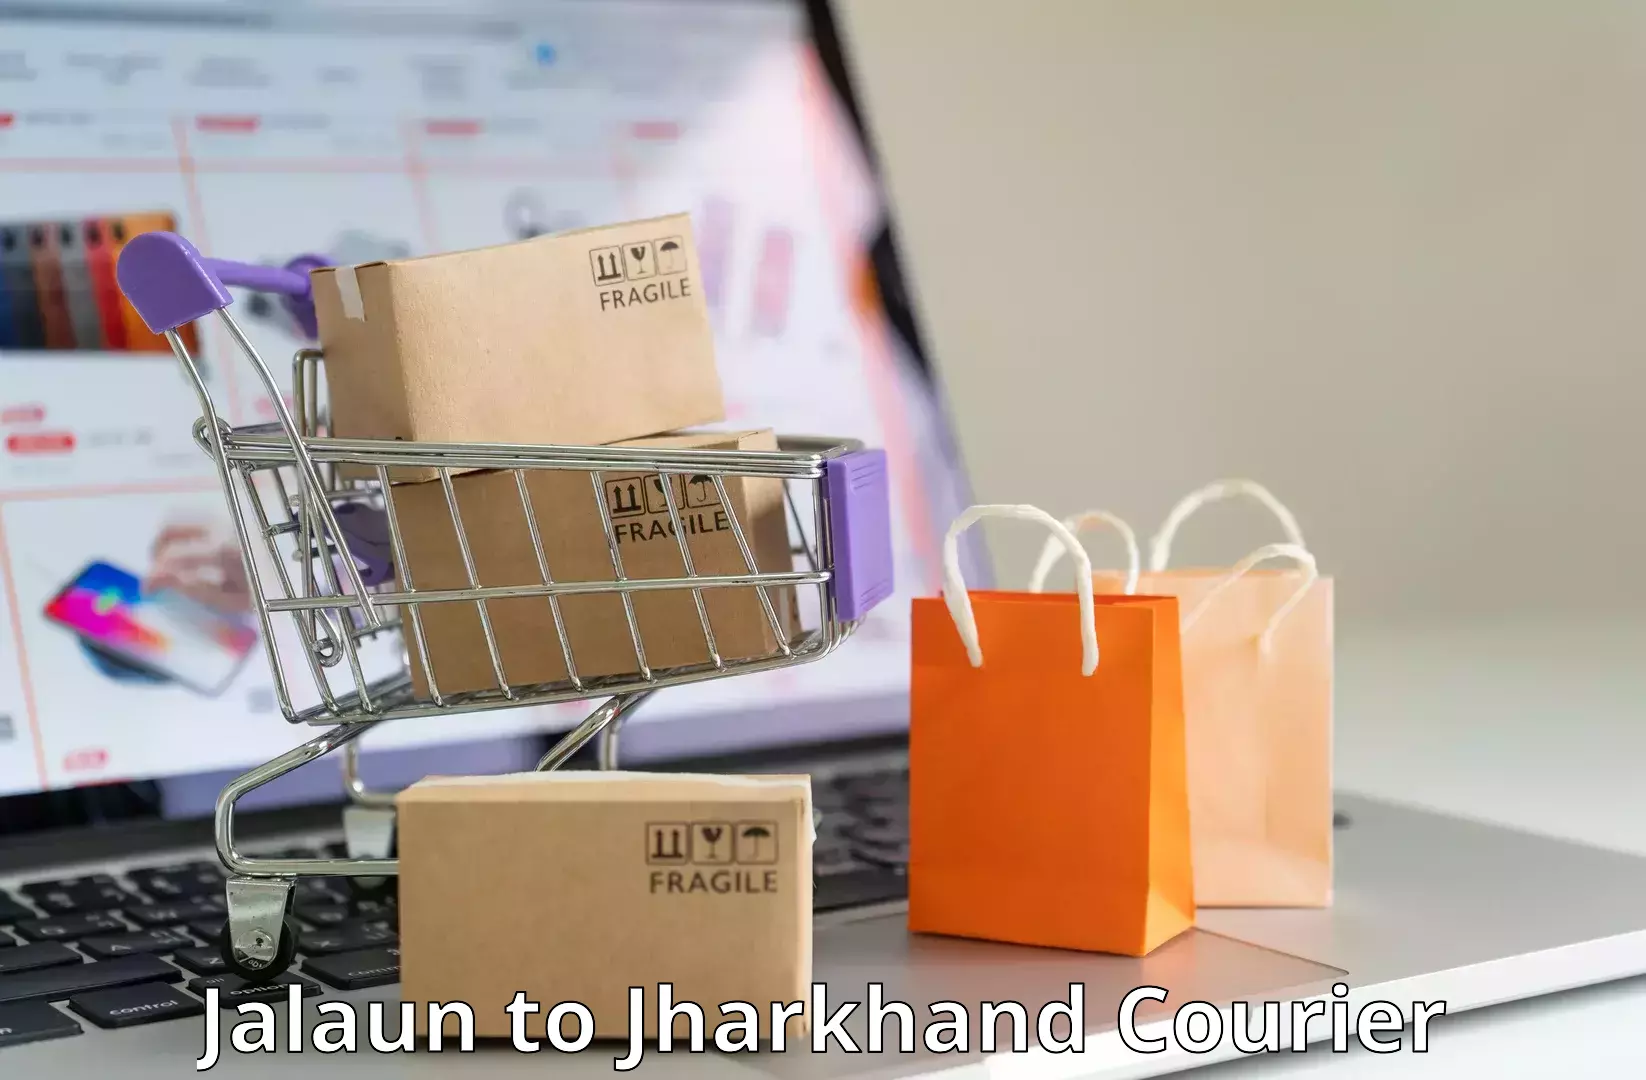 Efficient parcel service Jalaun to Jharkhand